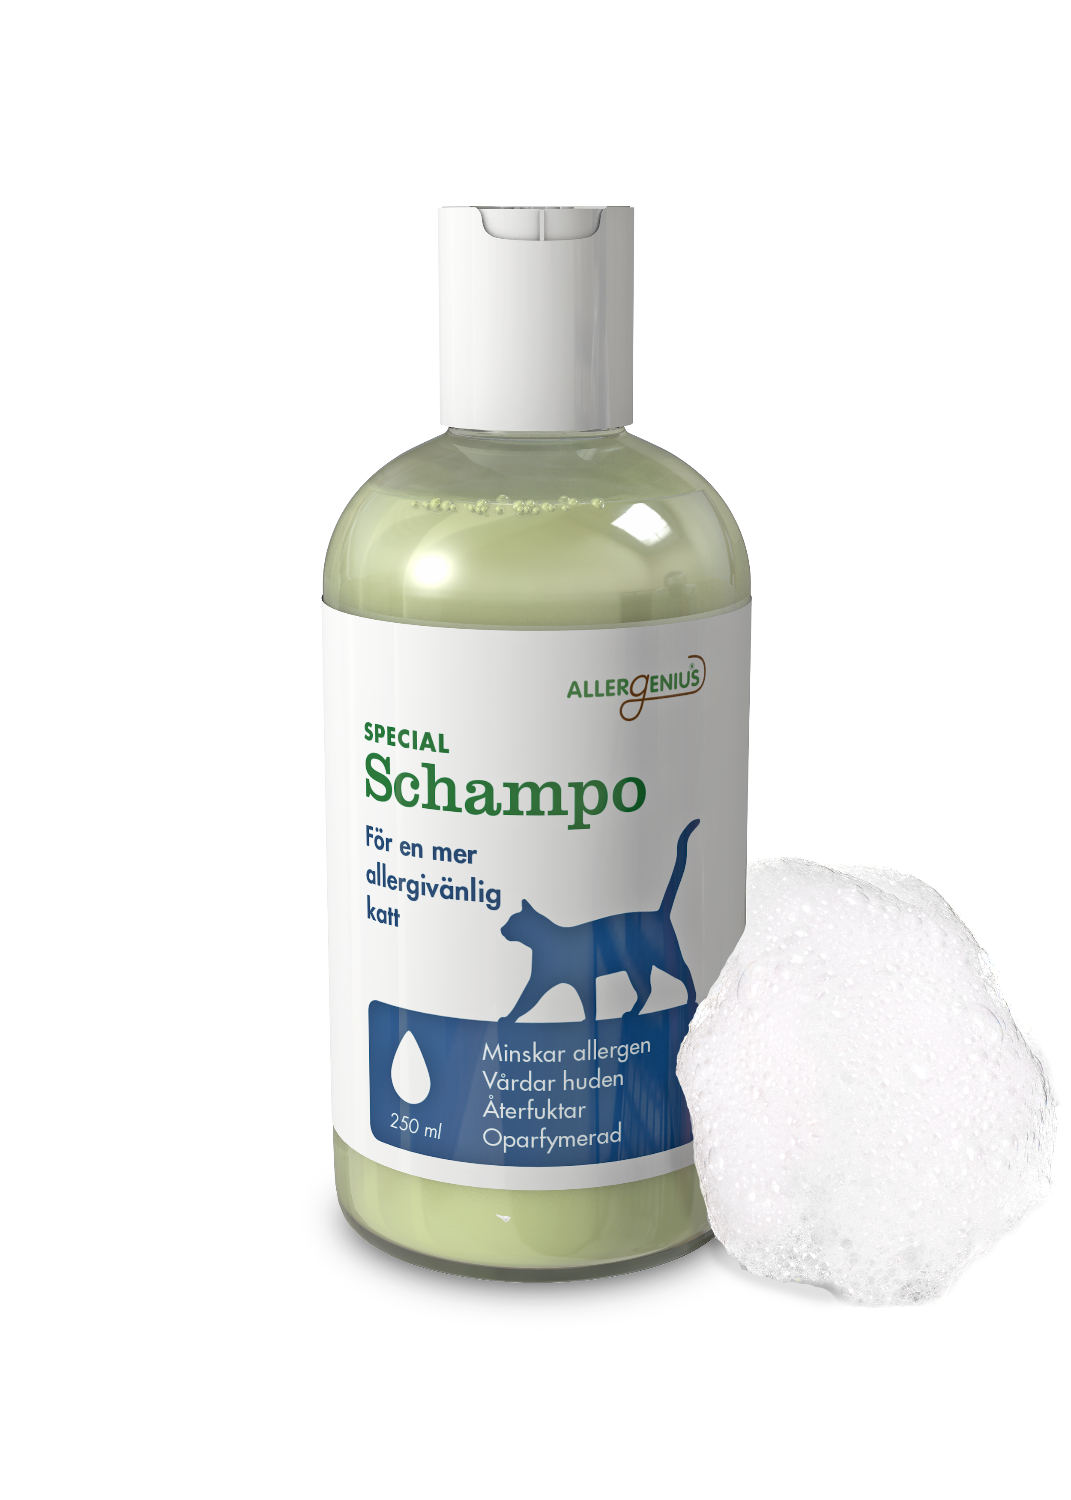 Allergenius® Cat Specialschampo